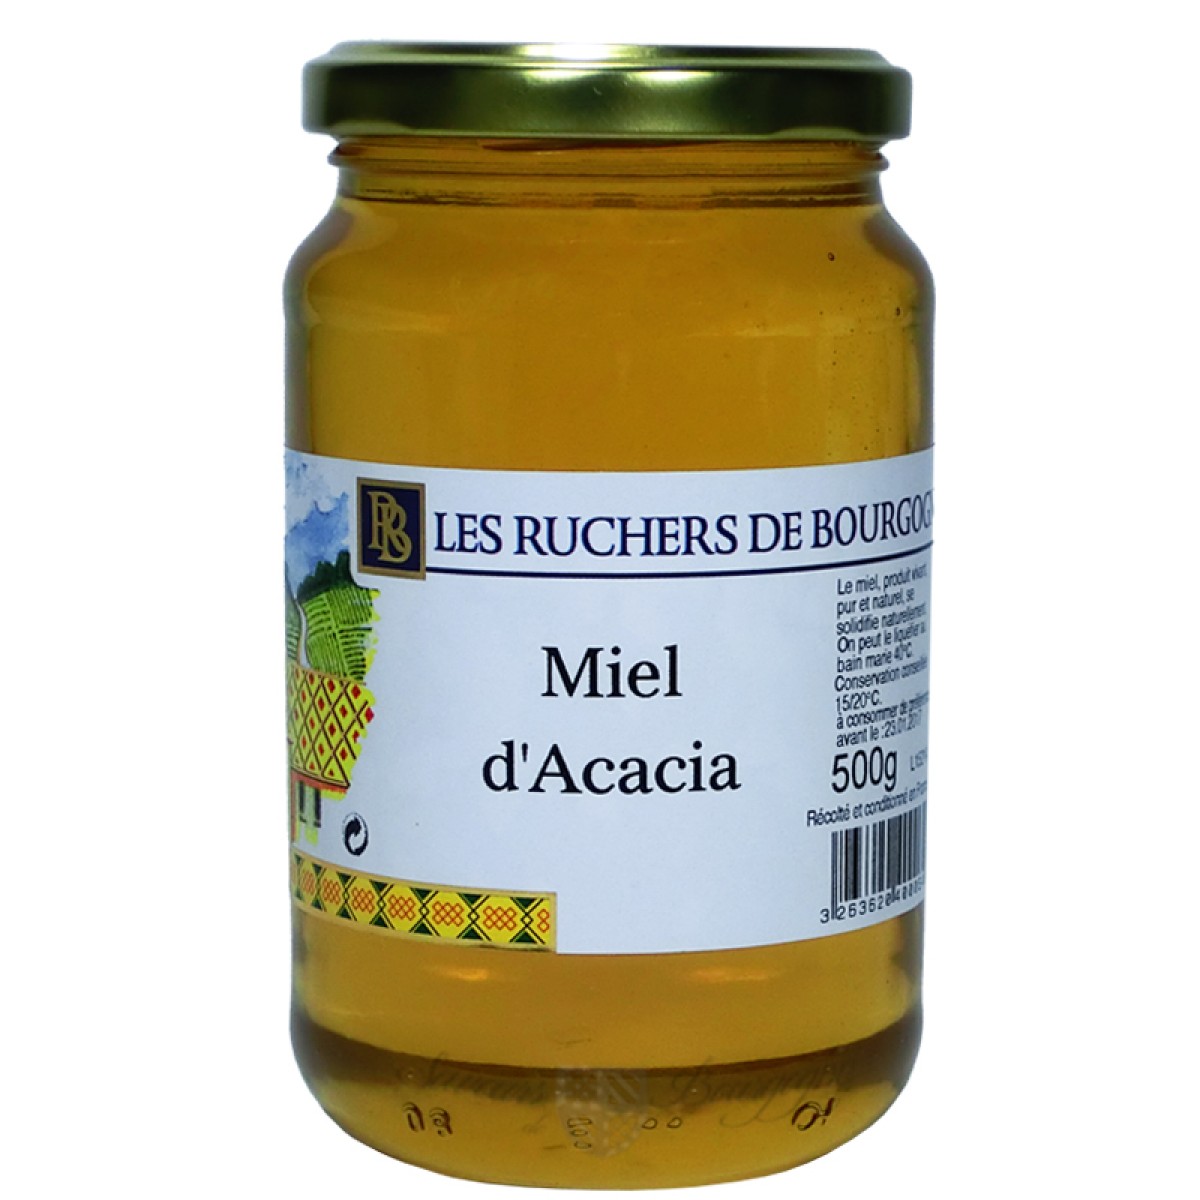 Miel d'Acacia un miel doux